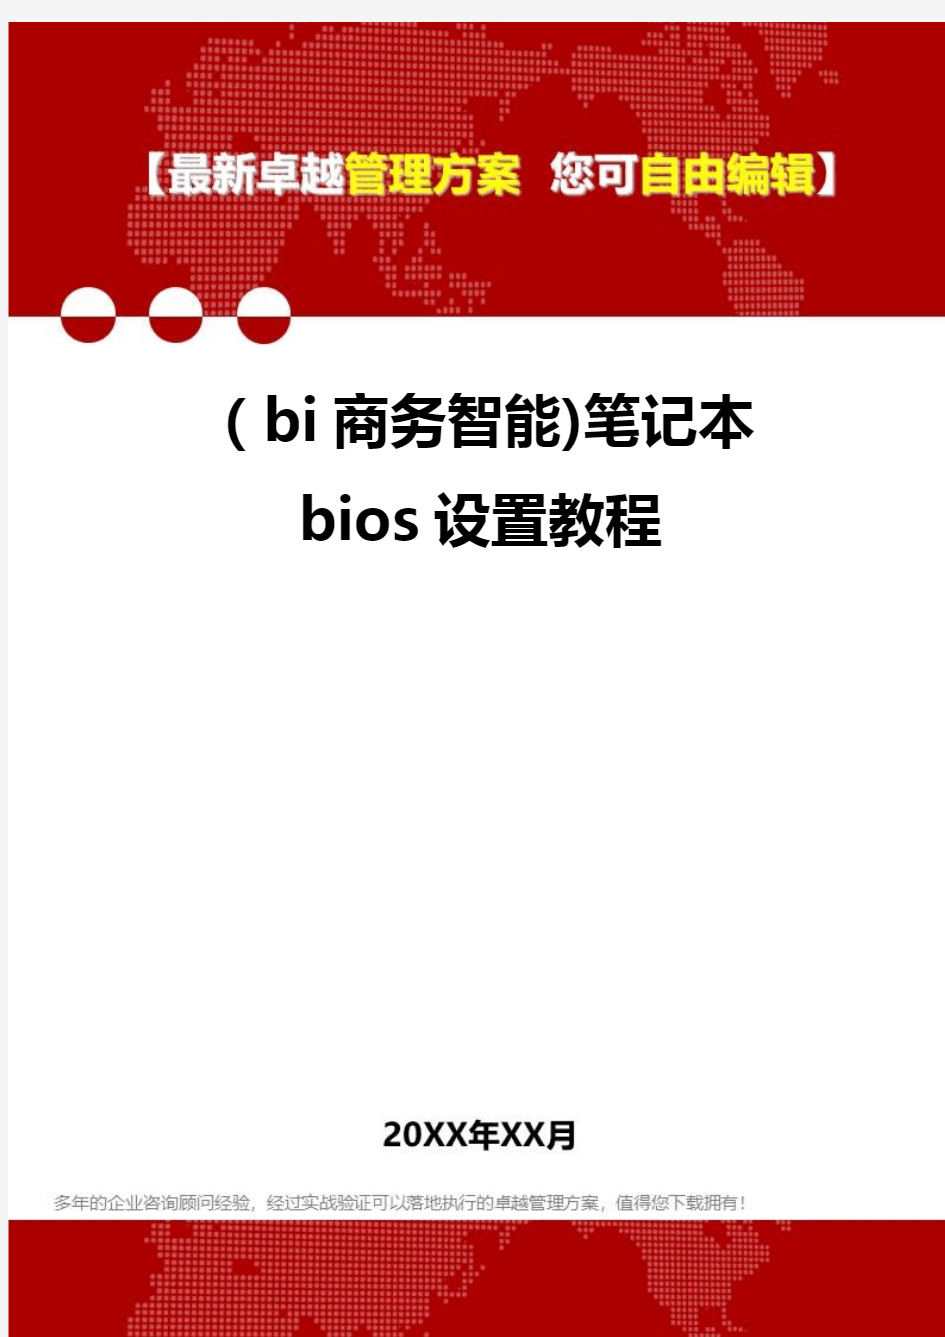 2020年(bi商务智能)笔记本bios设置教程